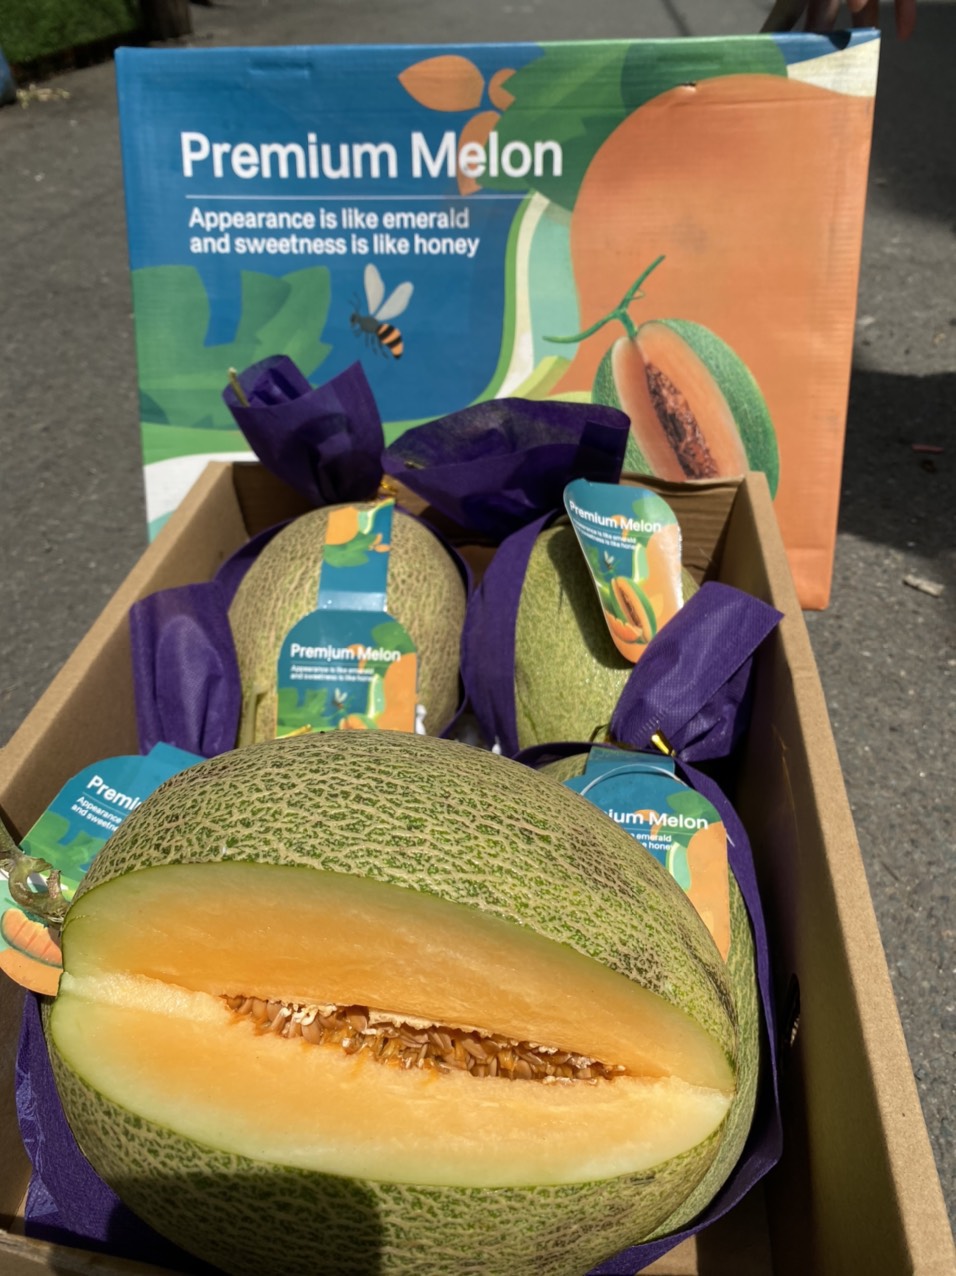 vg farm dưa lưới premium melon trái dài ruột cam (1,5kg - 1,7kg) giòn, ngọt thanh 1